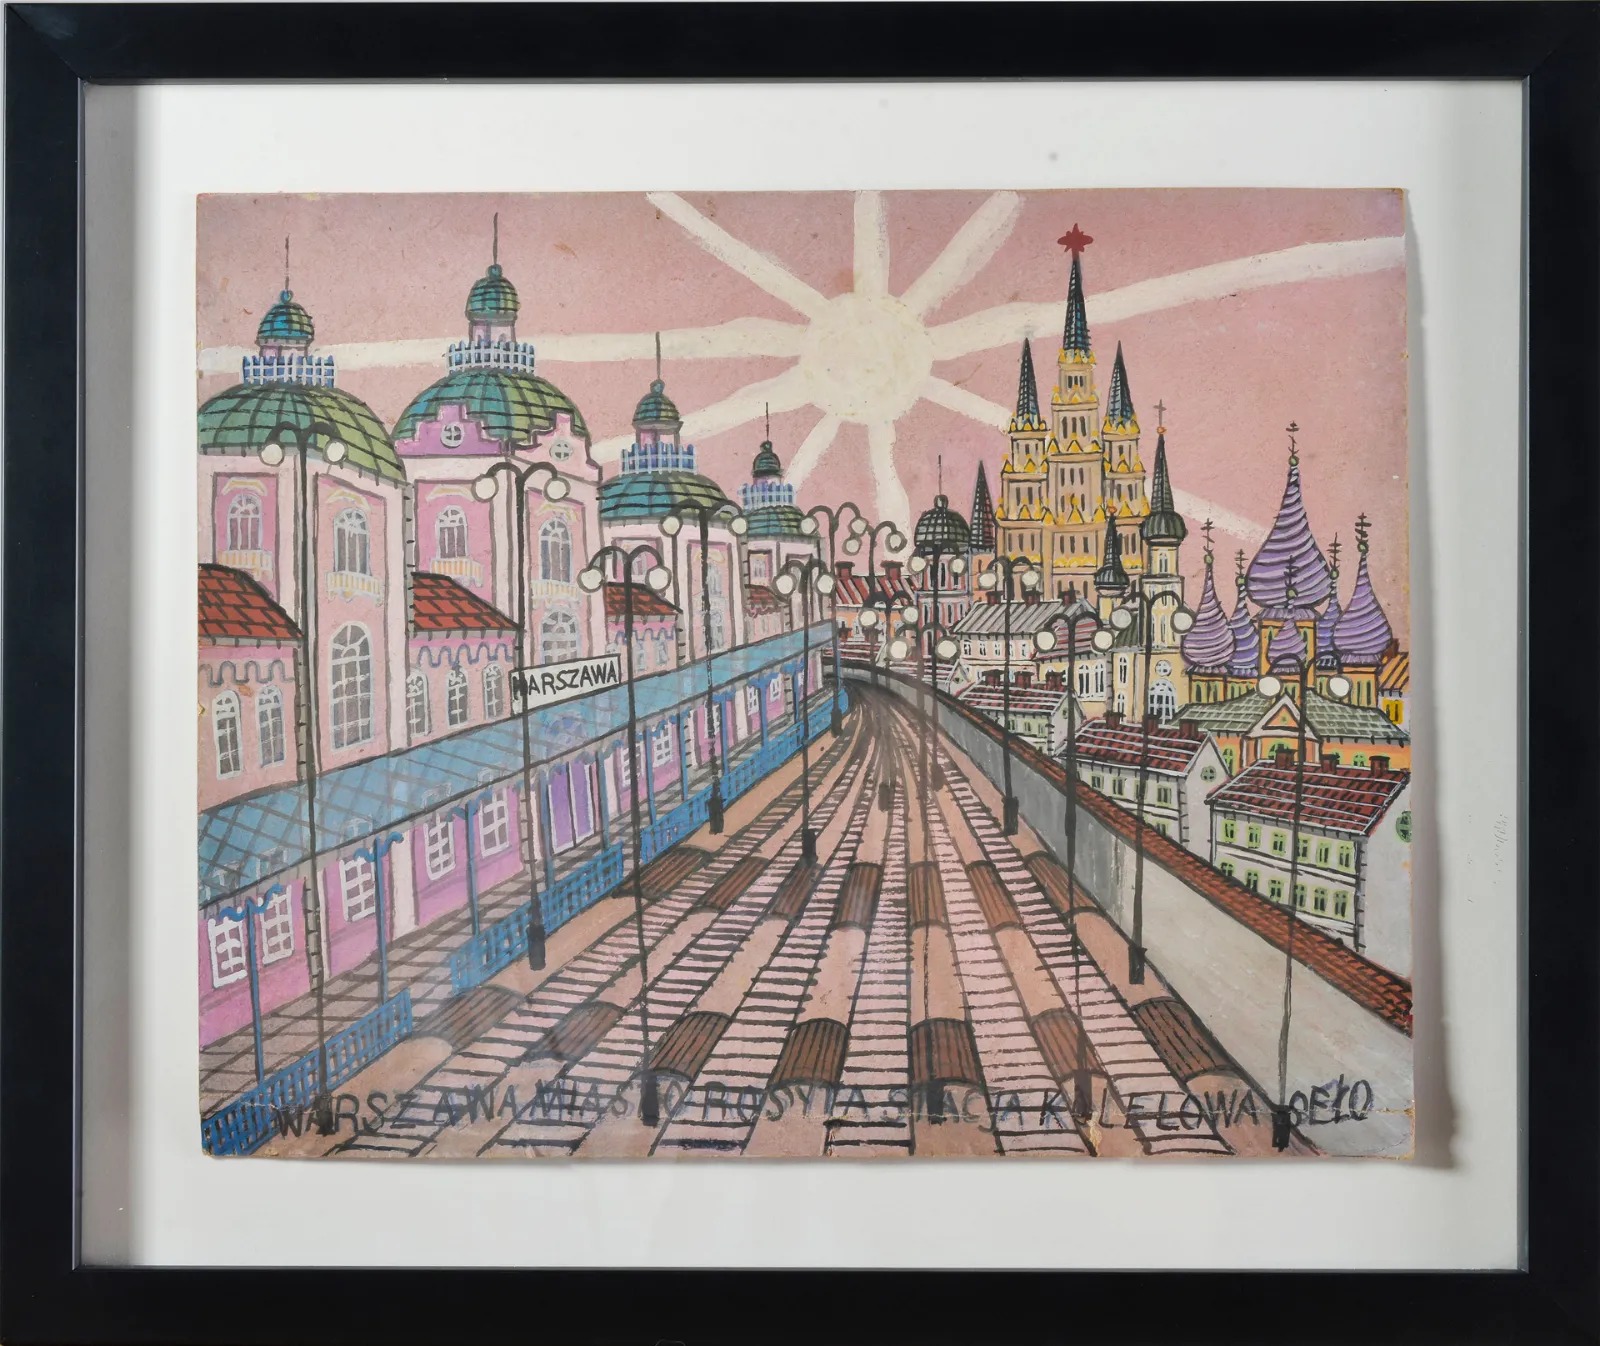 Nikifor Krynicki (1895-1968) "Stacja kolejowa Warszawa", źródło:  Ledbetter Folk Art